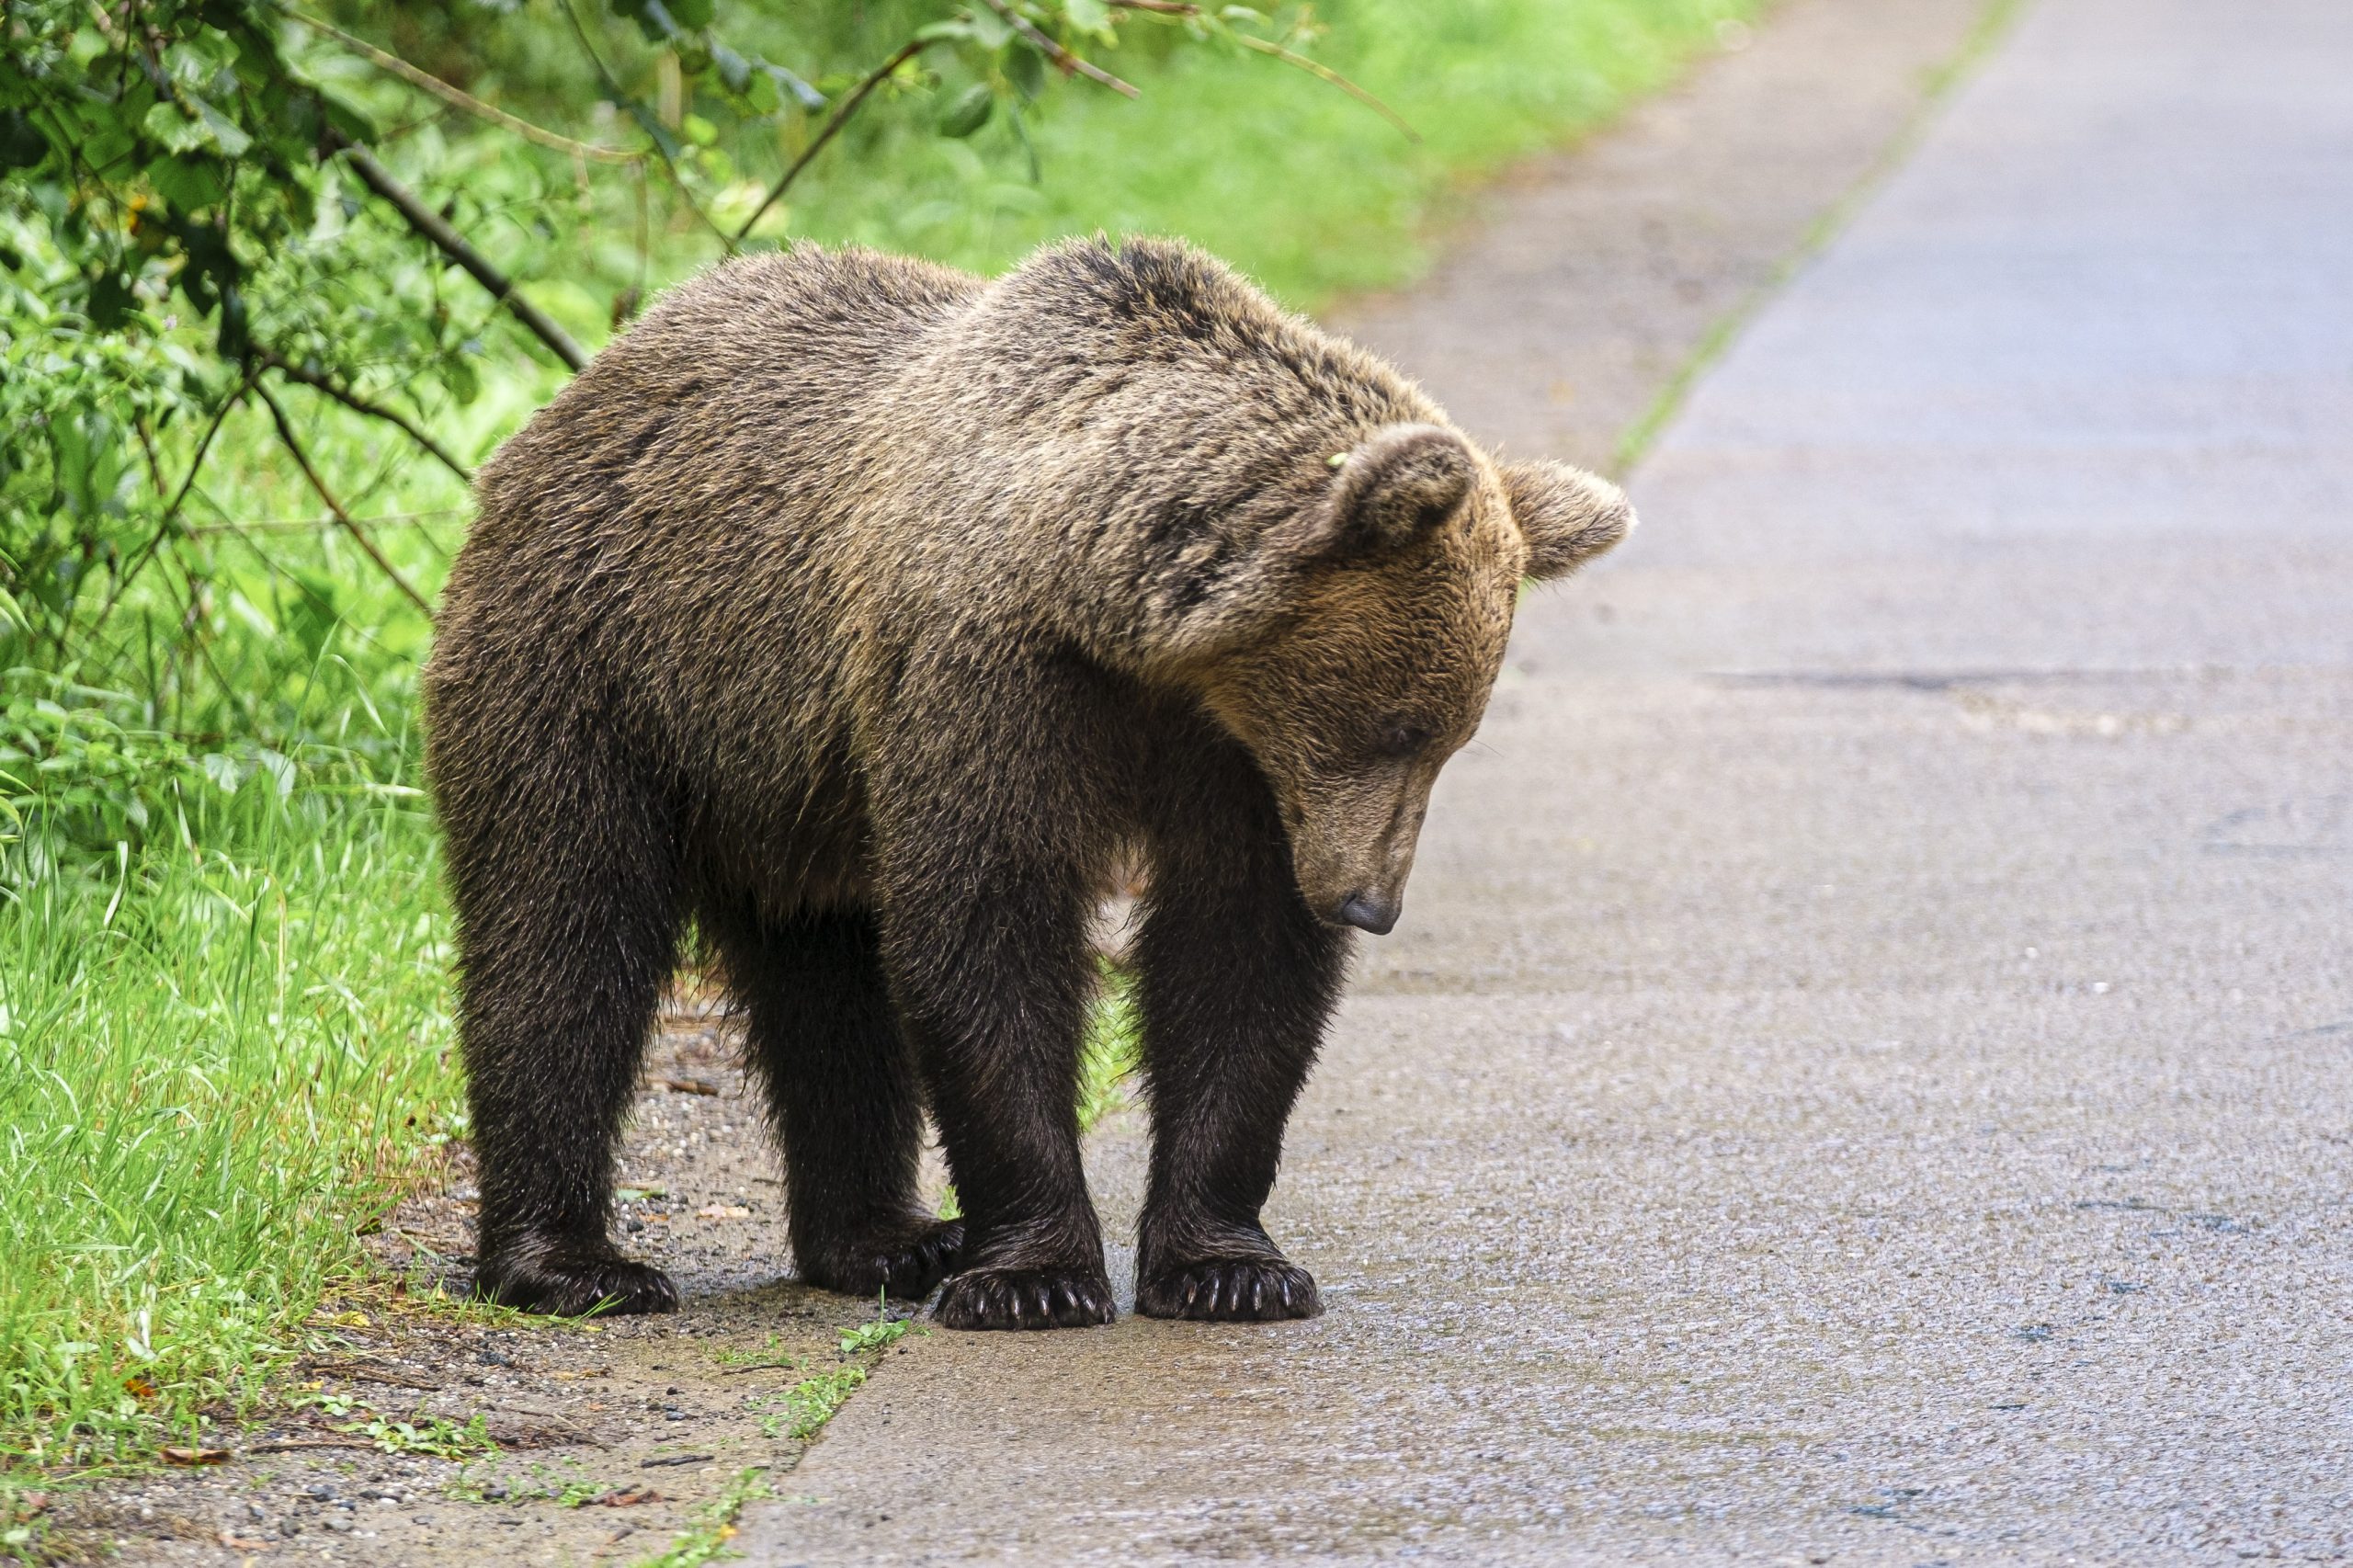 Több mint egymillió lejes kárt okoztak idén a medvék Háromszéken